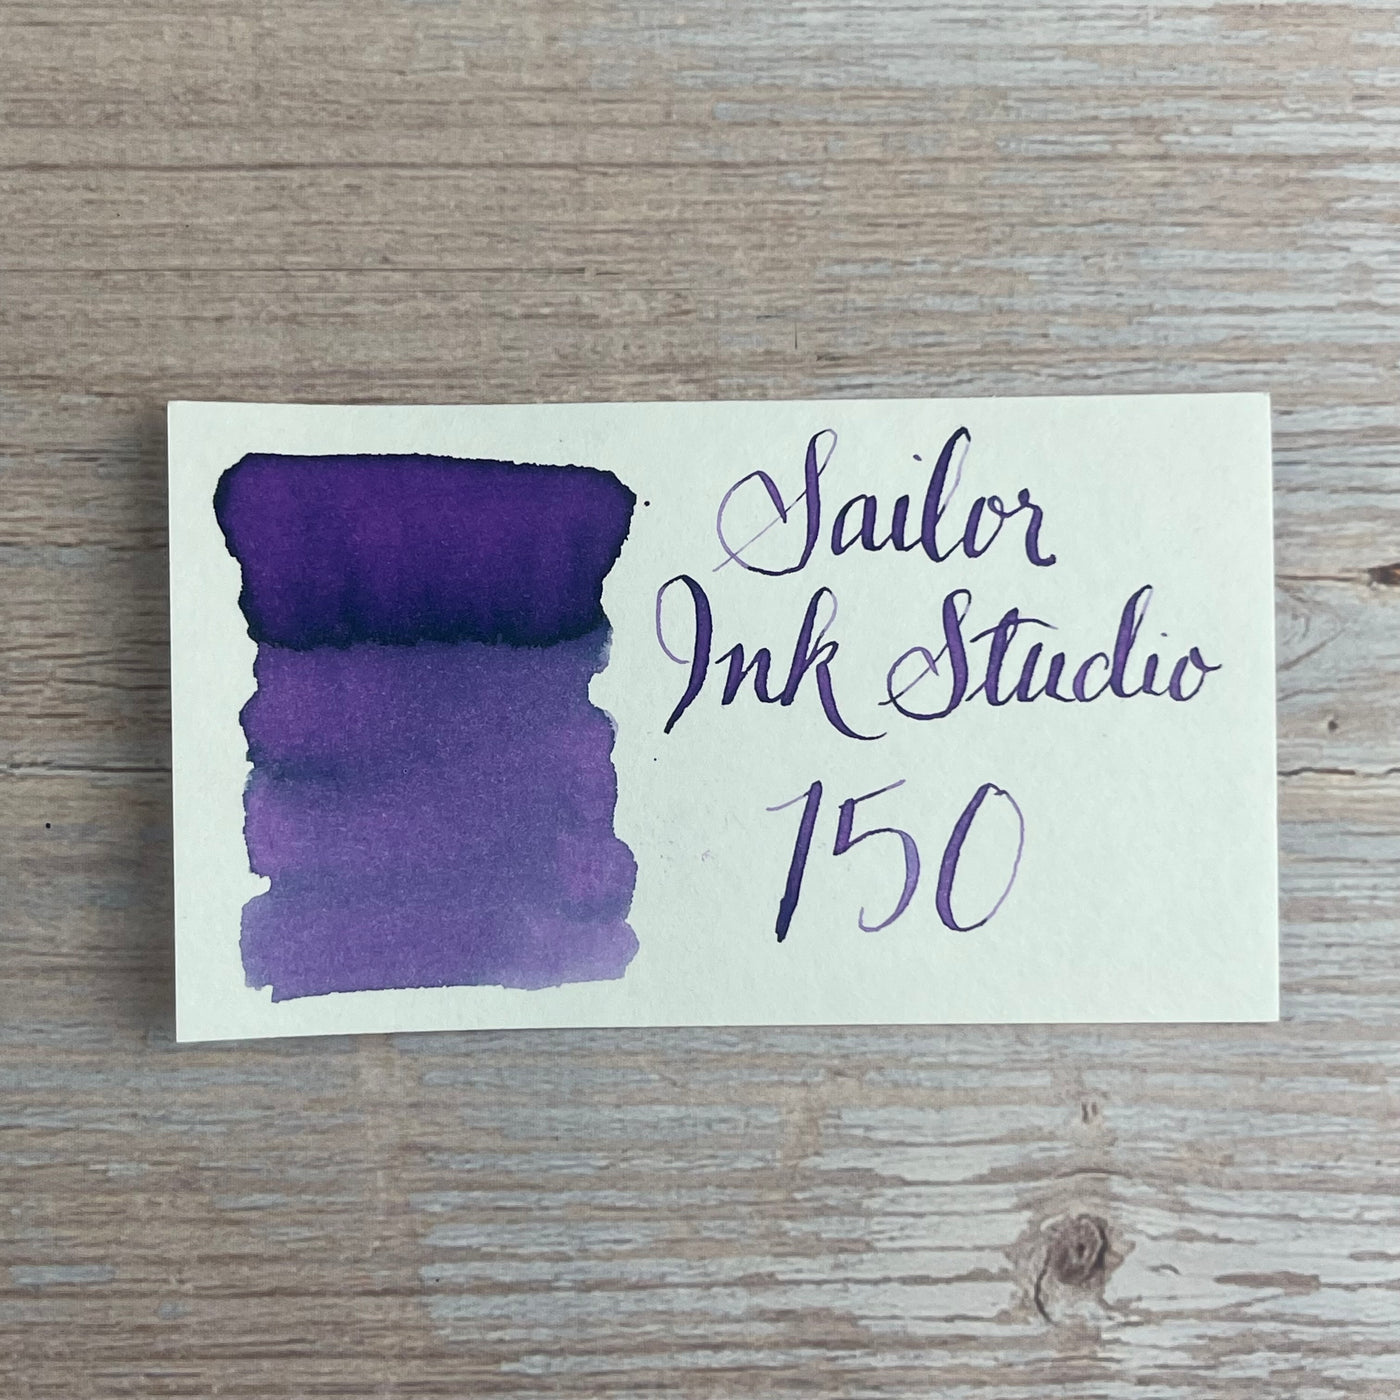 Sailor Ink Studio 20ml Bottled Ink - 150